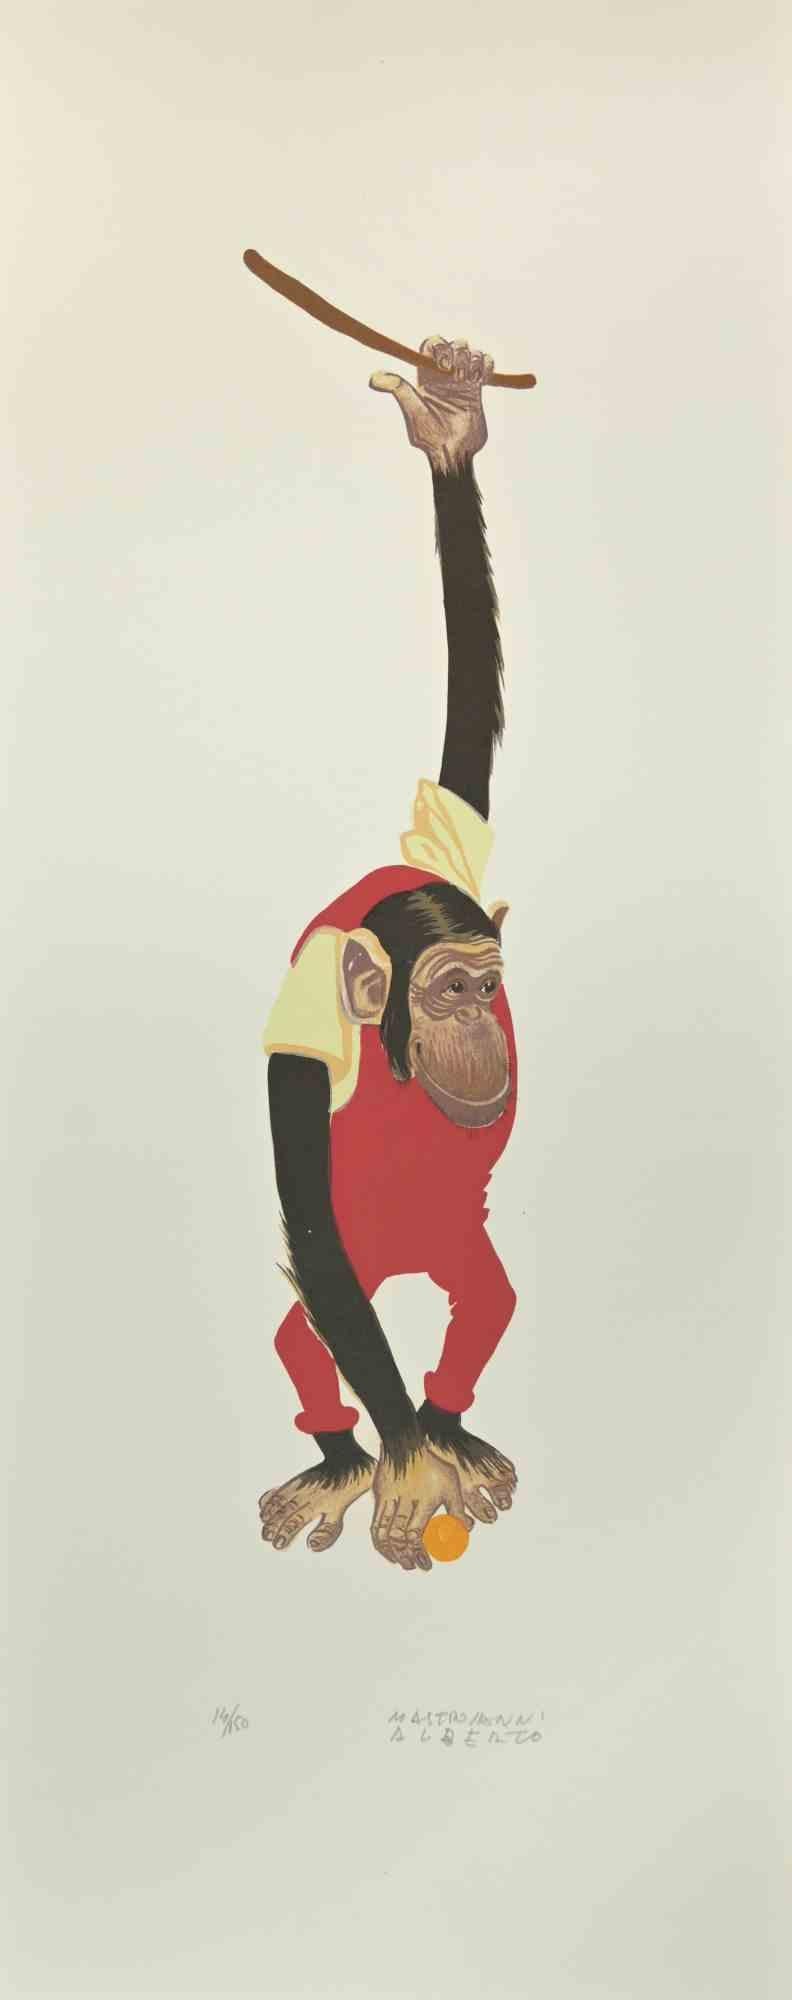 Monkey ist eine Lithographie von Alberto Mastroianni aus den 1970er Jahren.

Handsigniert am unteren rechten Rand. Am unteren Rand mit Bleistift nummeriert. Aus einer Auflage von 150 Exemplaren.

Die Bemühungen des Künstlers zeigen die perfekte